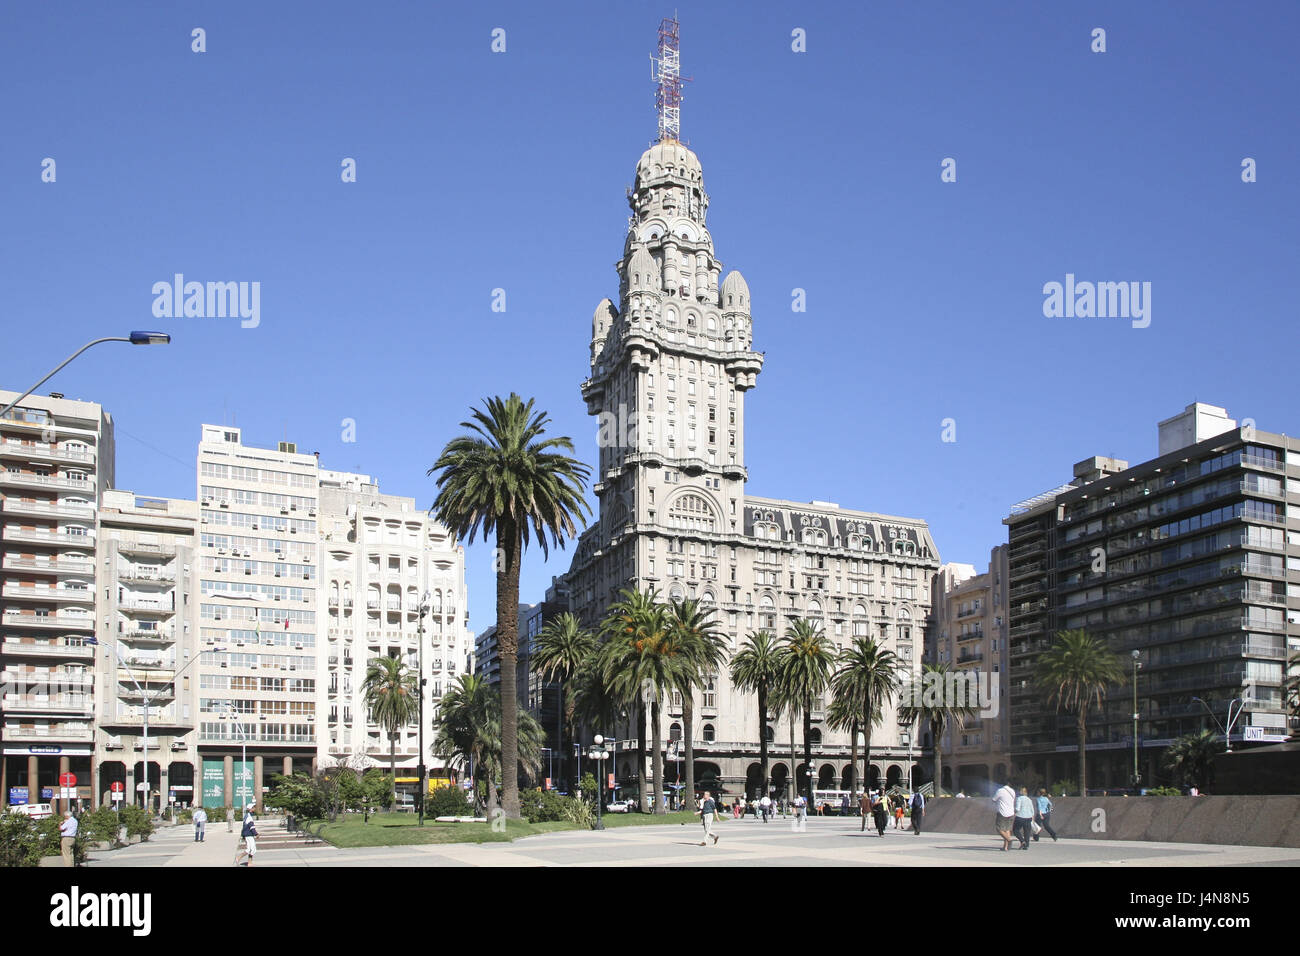 South America, Uruguay, Montevideo, Palacio Salvo, Stock Photo